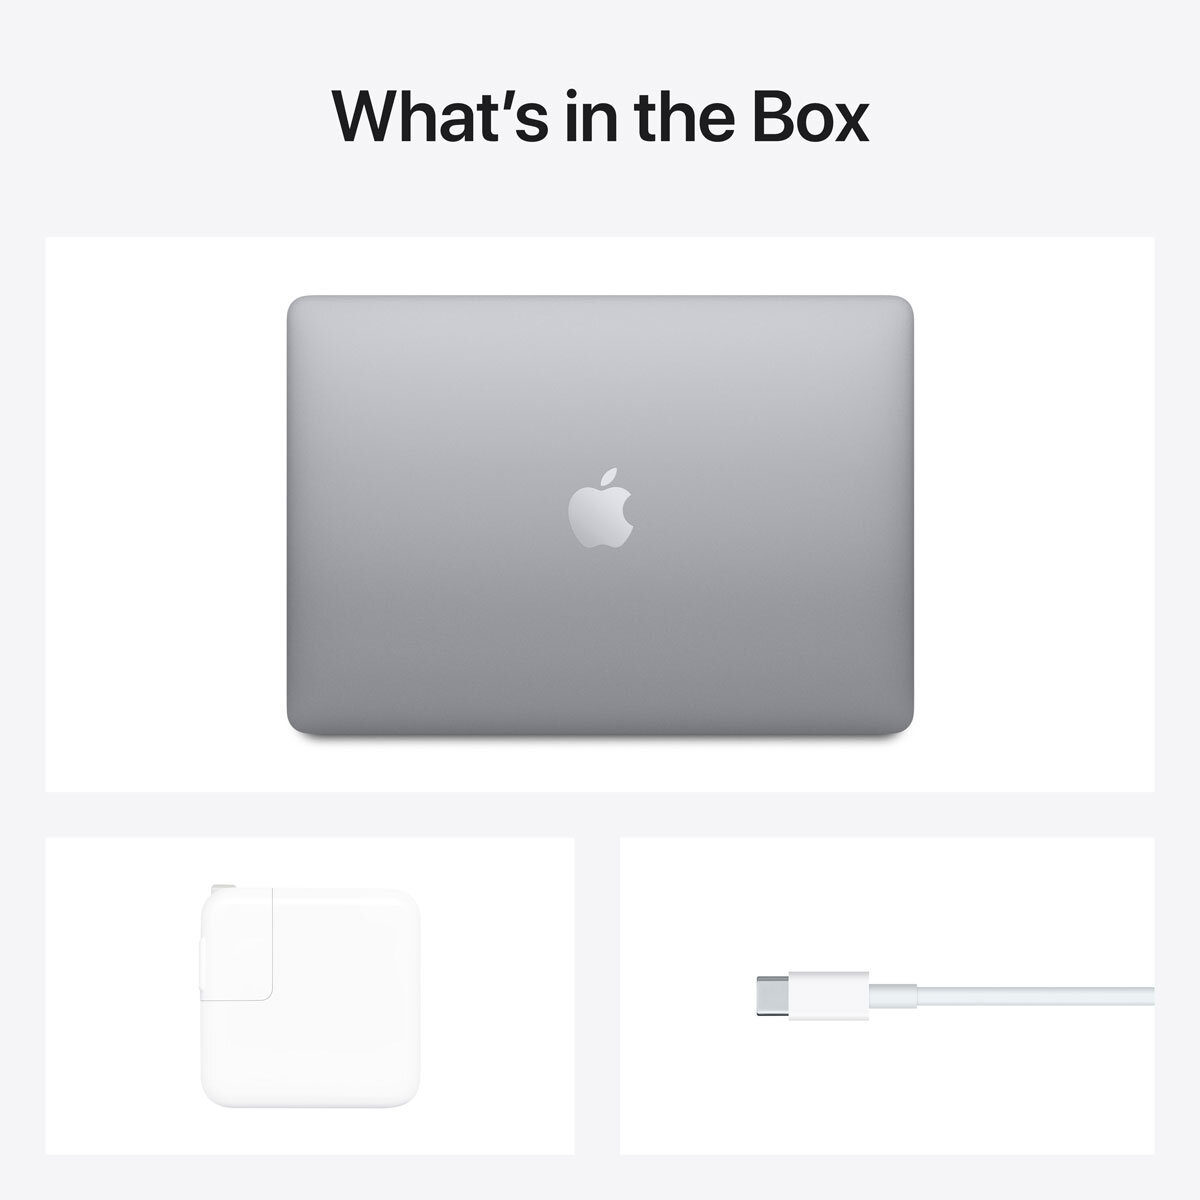 【使用少/2016モデル/i7】Macbook Air 13.3inch